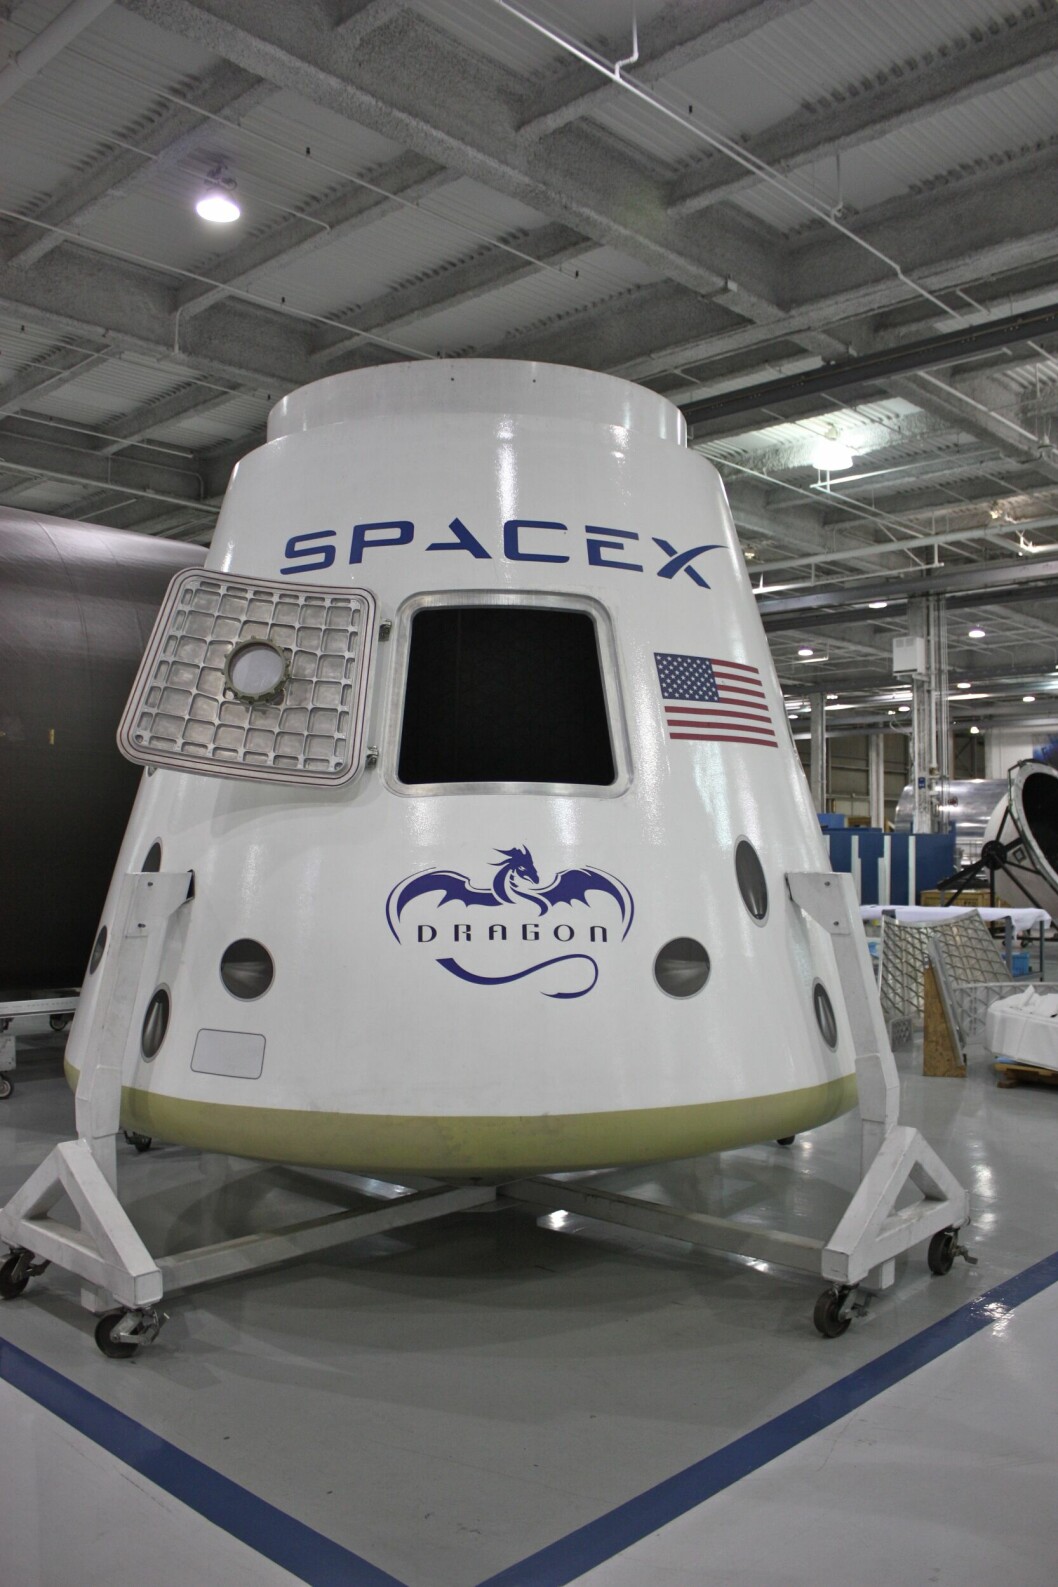 INTRERNETT I ROMMET: Testdrift neste år. Kommersiell drift om fem år. Det er hva SpaceX sikter etter. (Illustrasjonsfoto: Bruno Sanchez-Andrade Nuño/Wikimedia Commons (CC BY 2.0))